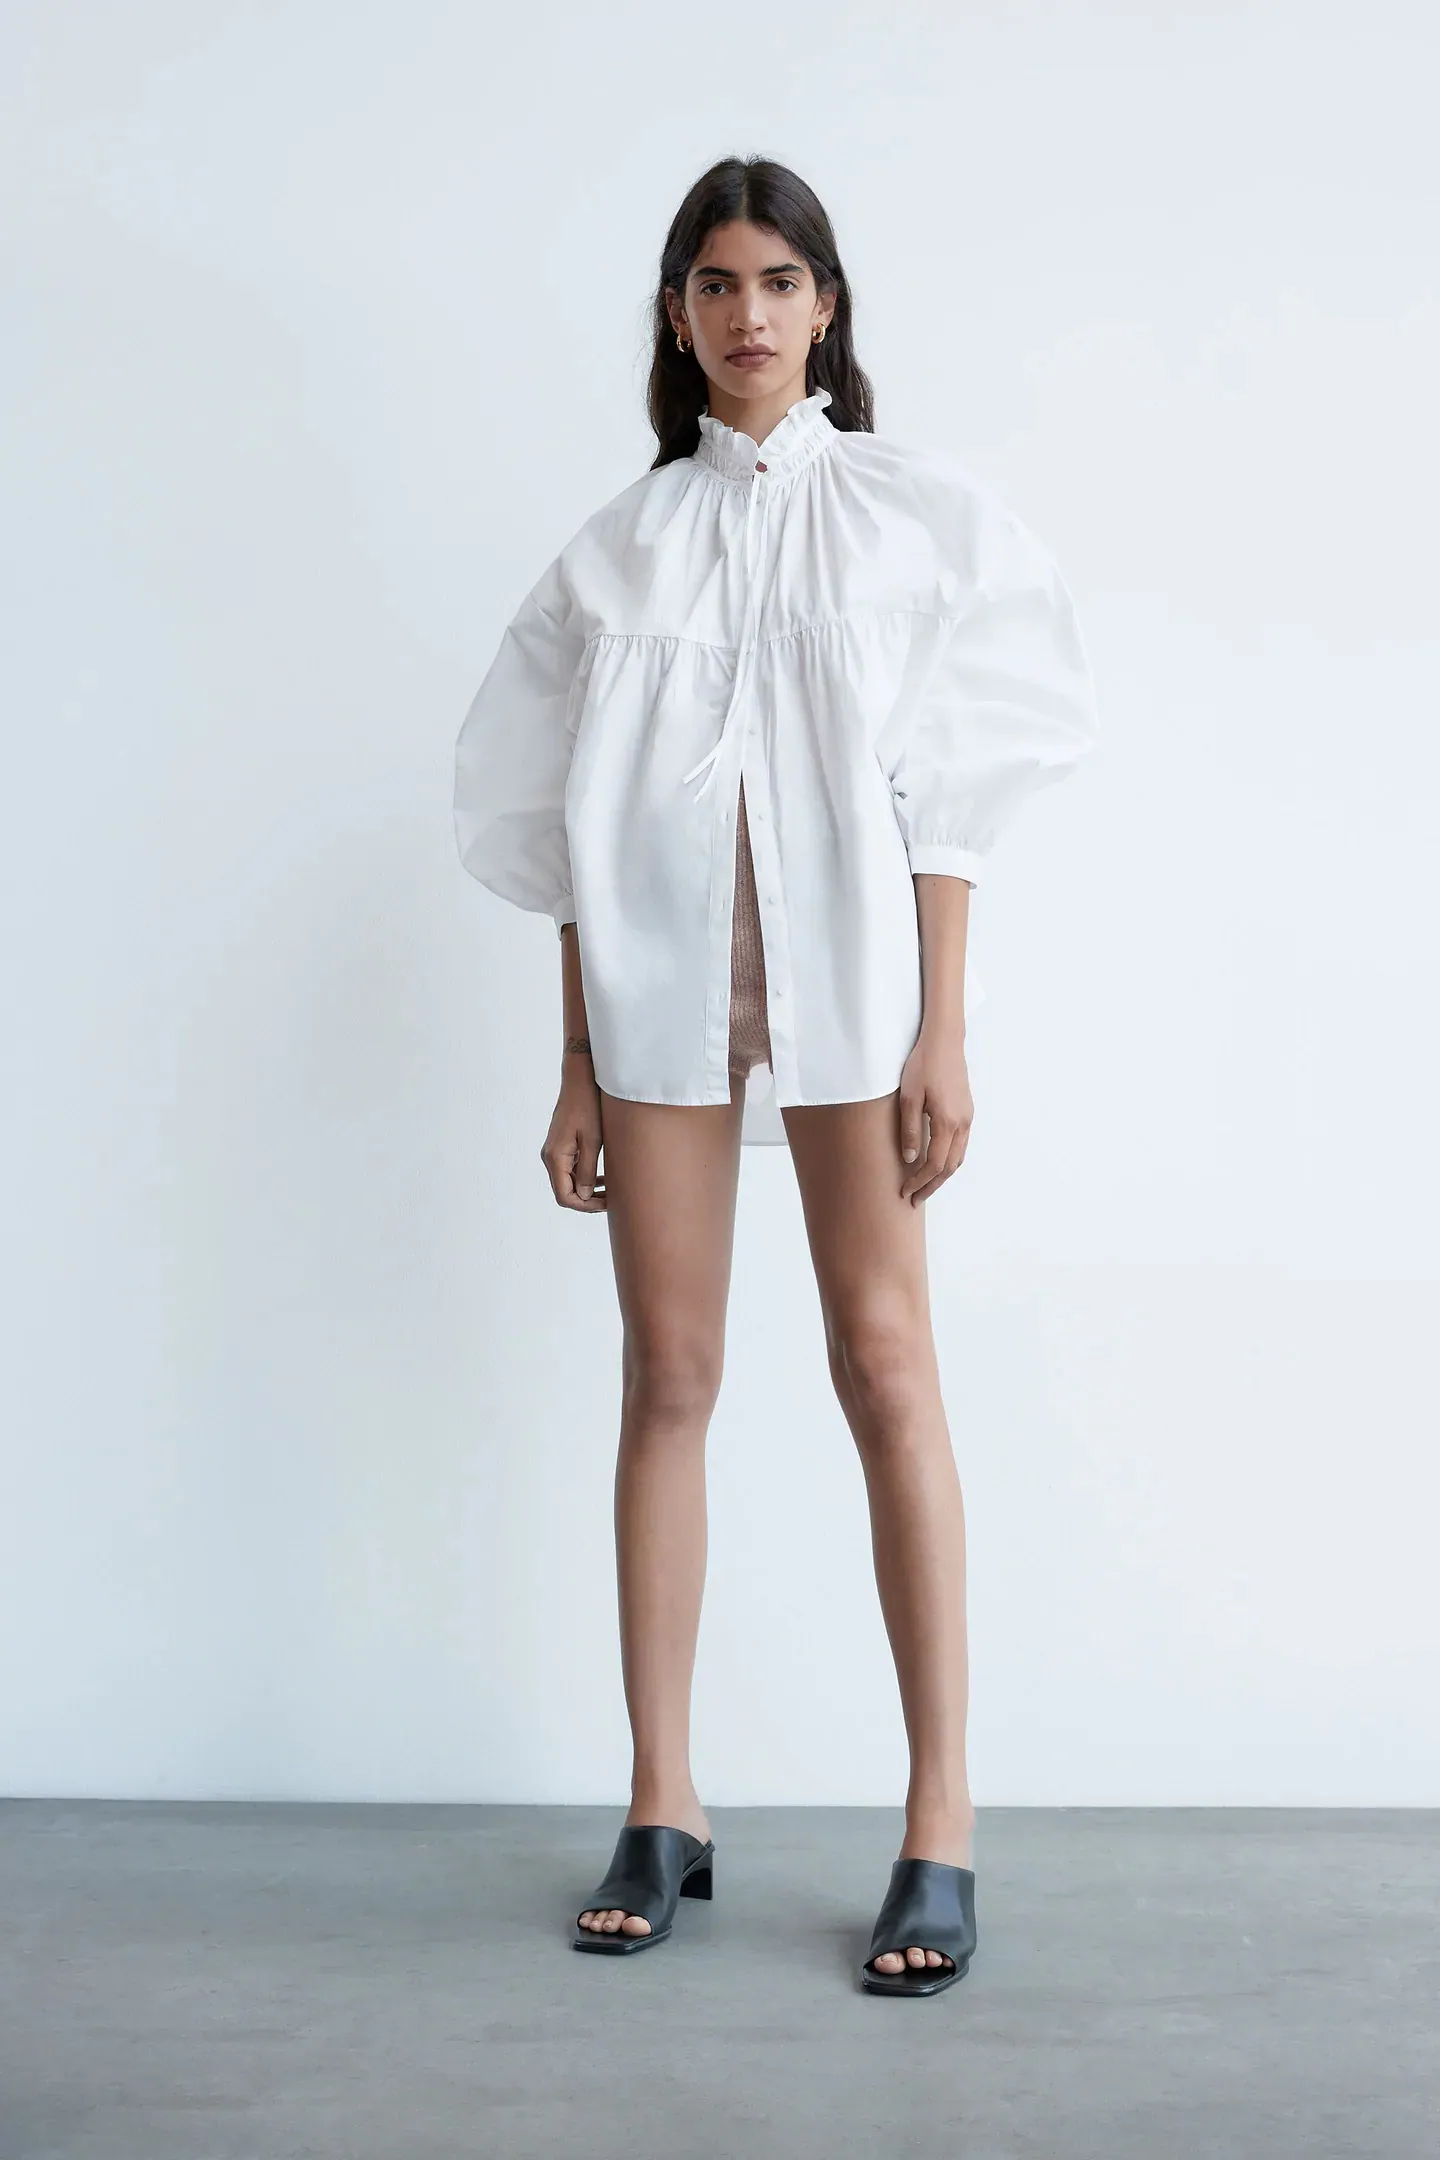 Fotos: Las camisas blancas más bonitas de las de Zara que serán tendencia esta primavera que ya nos hacen soñar con el buen tiempo | Mujer Hoy